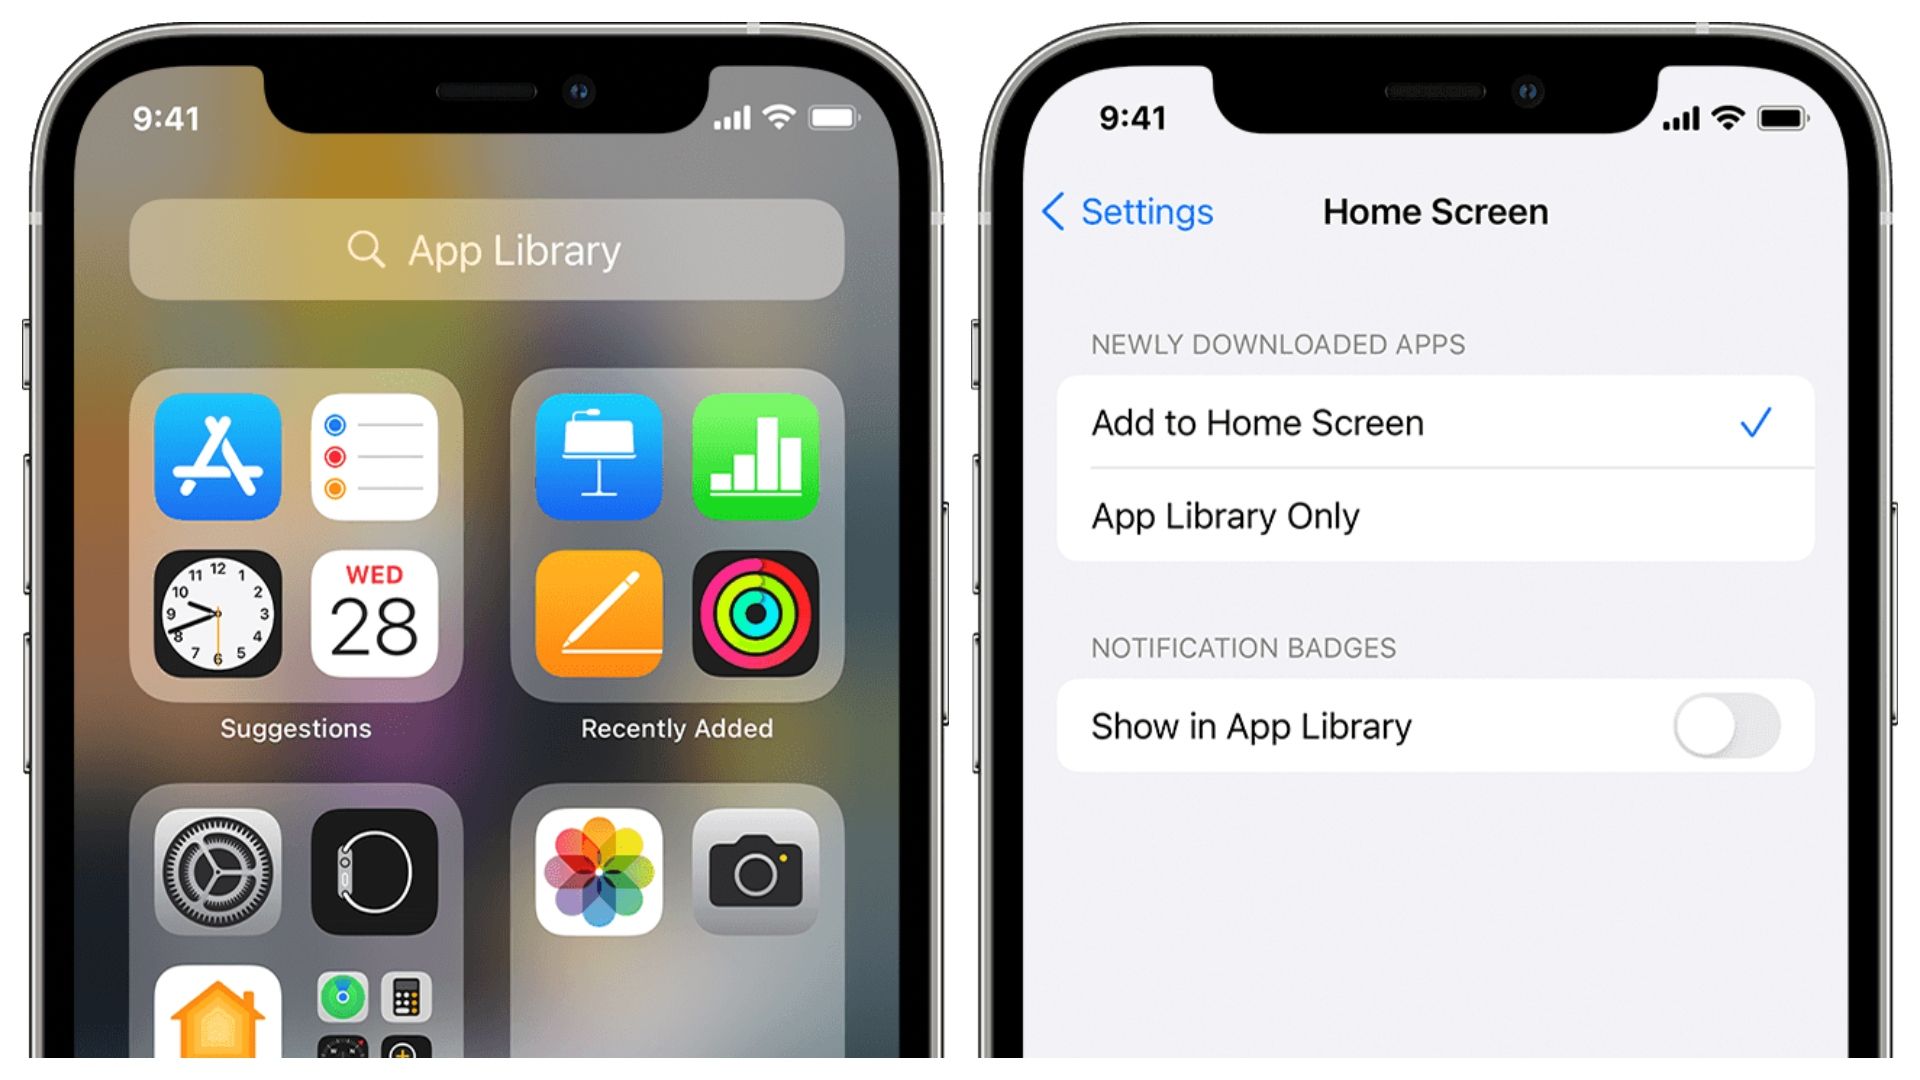 Dans cet article, nous allons expliquer comment ajouter des applications à l'écran d'accueil sur iPhone, afin que vous puissiez personnaliser l'emplacement de vos applications comme vous le souhaitez.